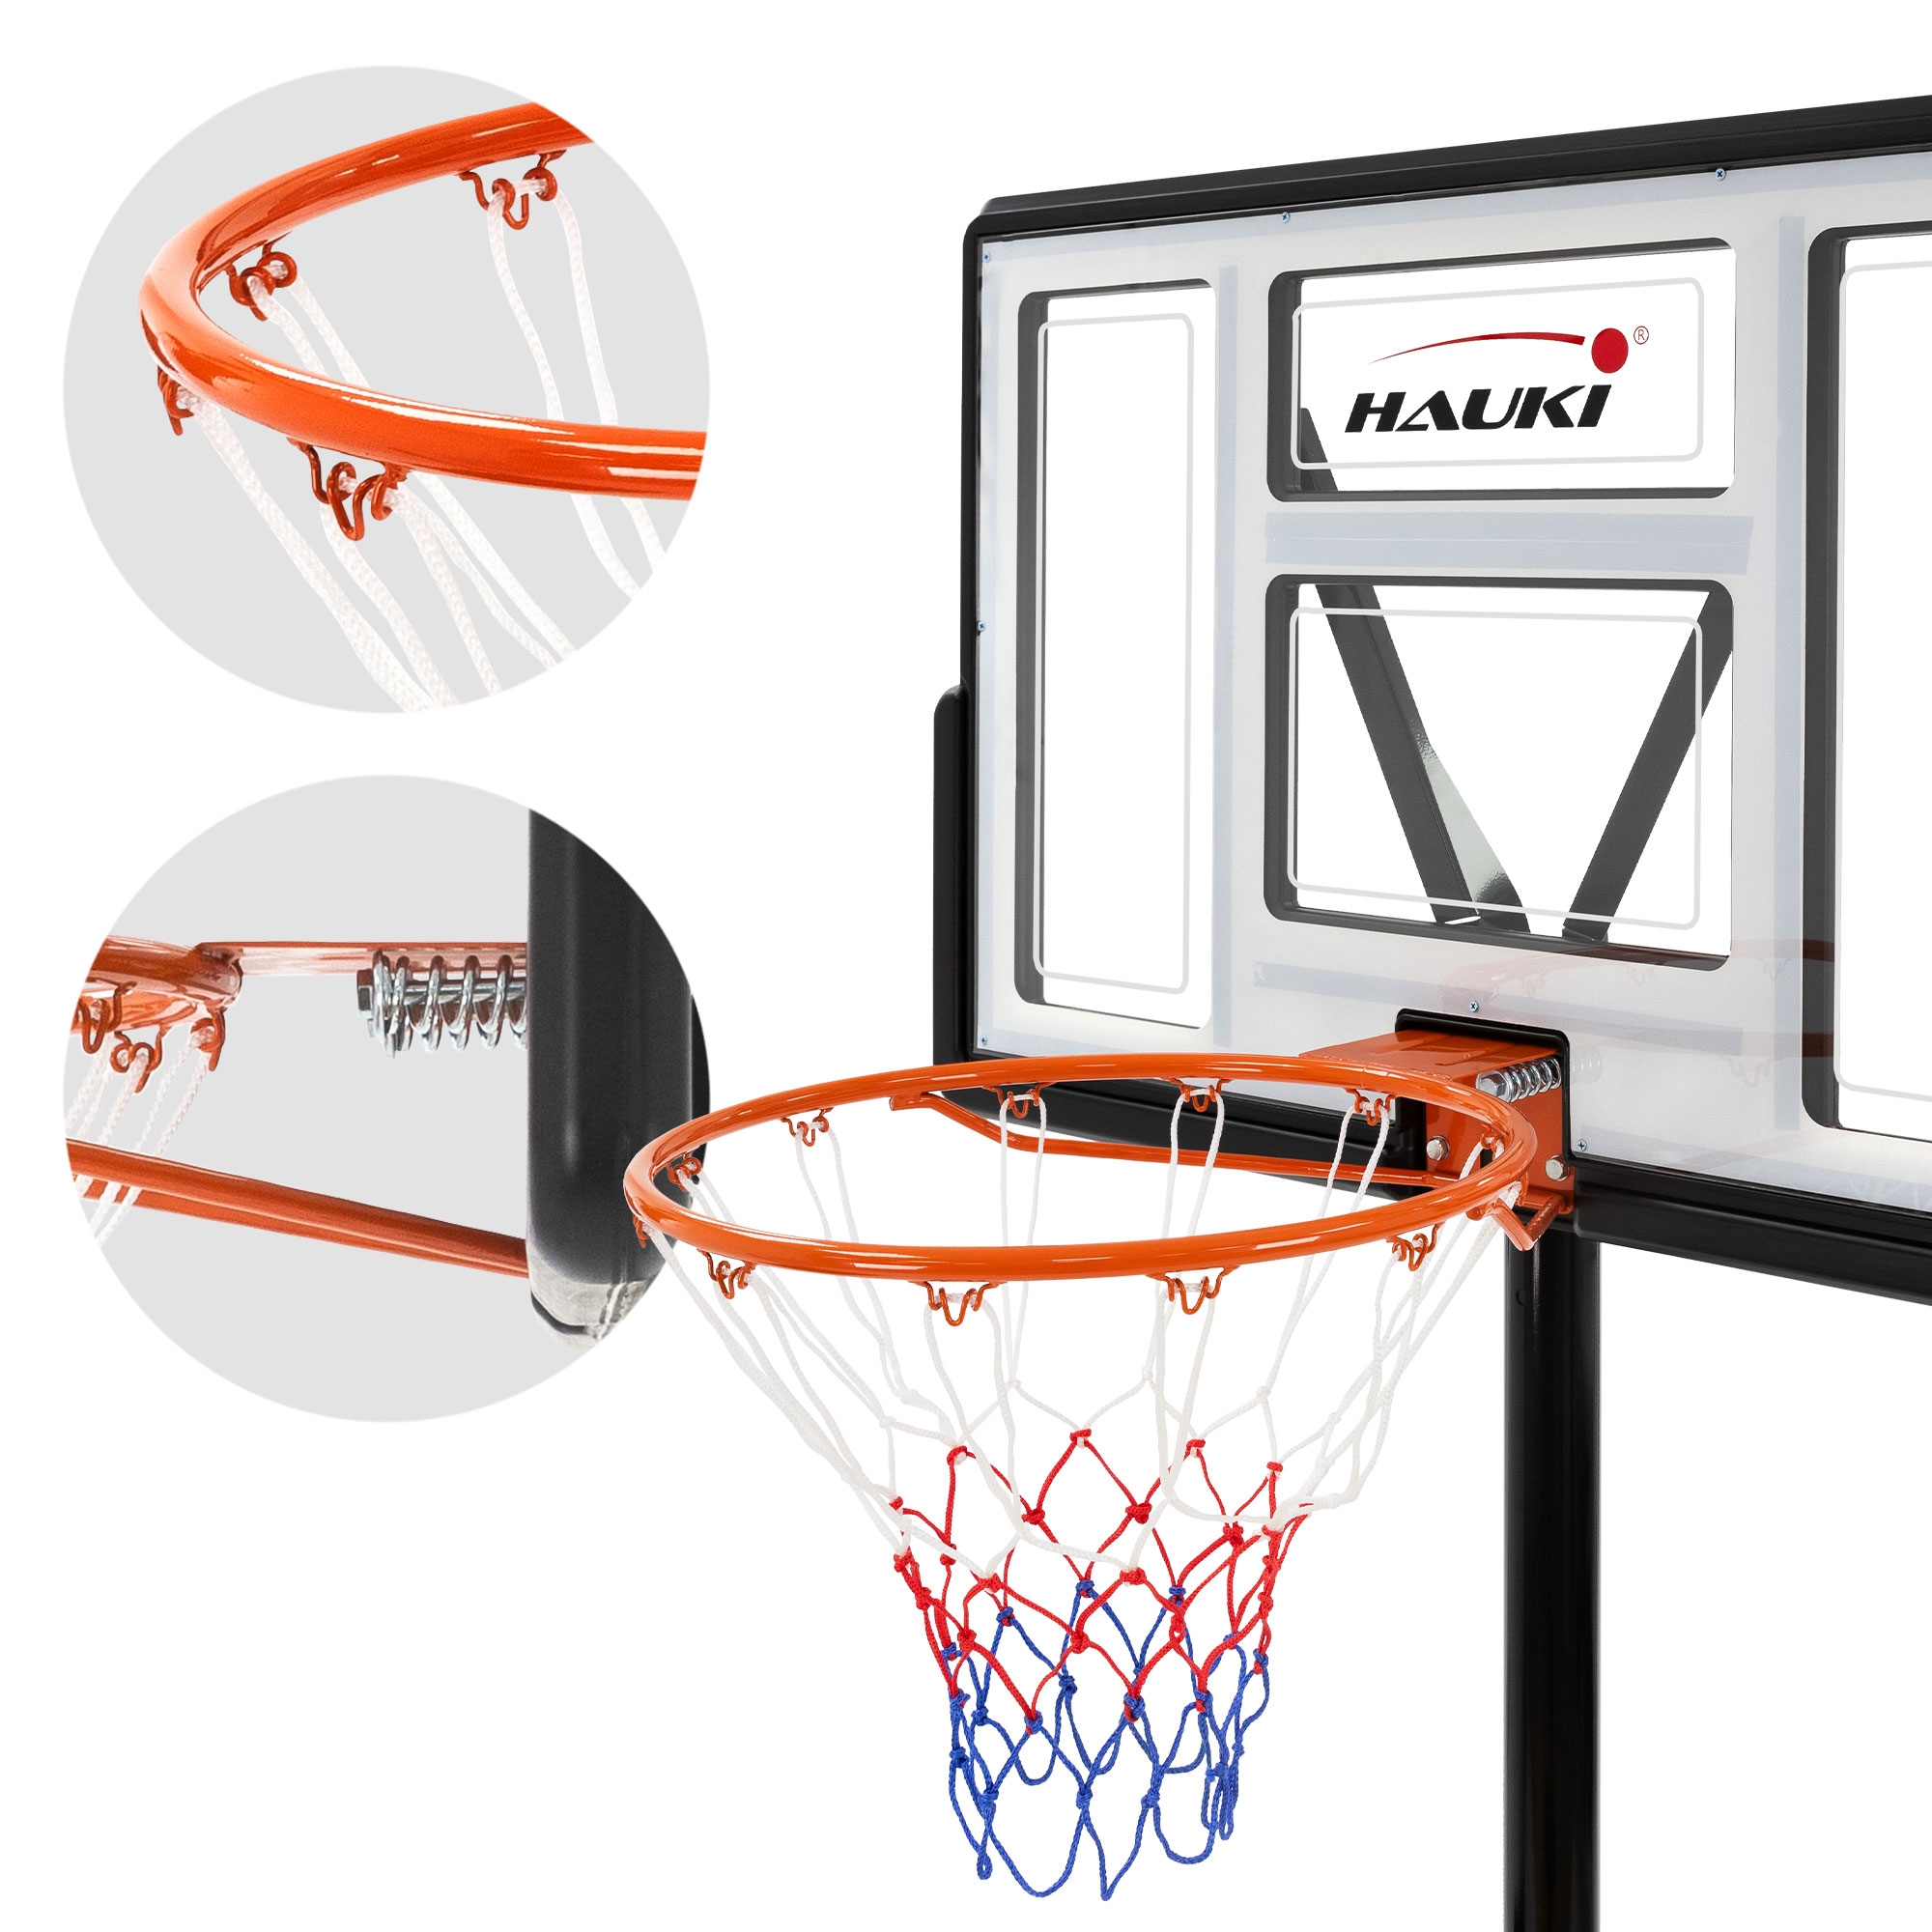 Canasta de baloncesto exterior sistema de basquet móvil rojo altura 235-295  cm